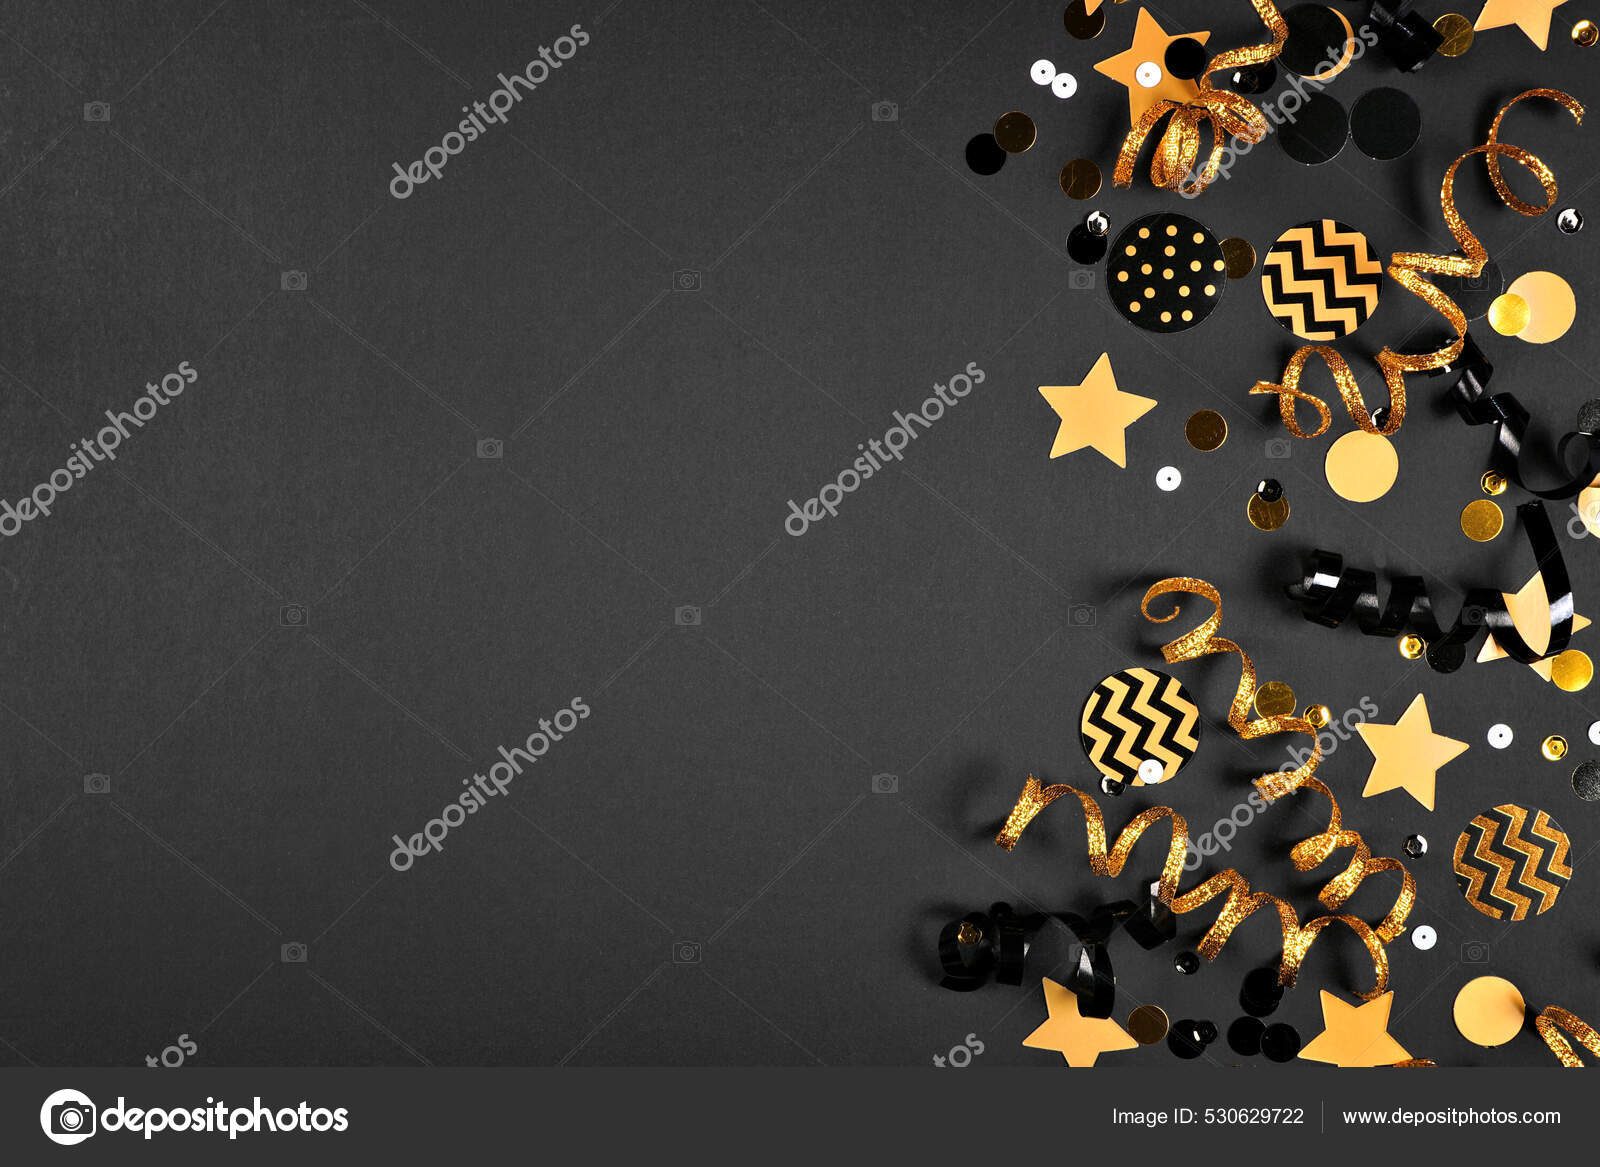 New Years Party Double Border Shiny Black Gold Streamers Confetti Stock  Photo by ©JeniFoto 530629692